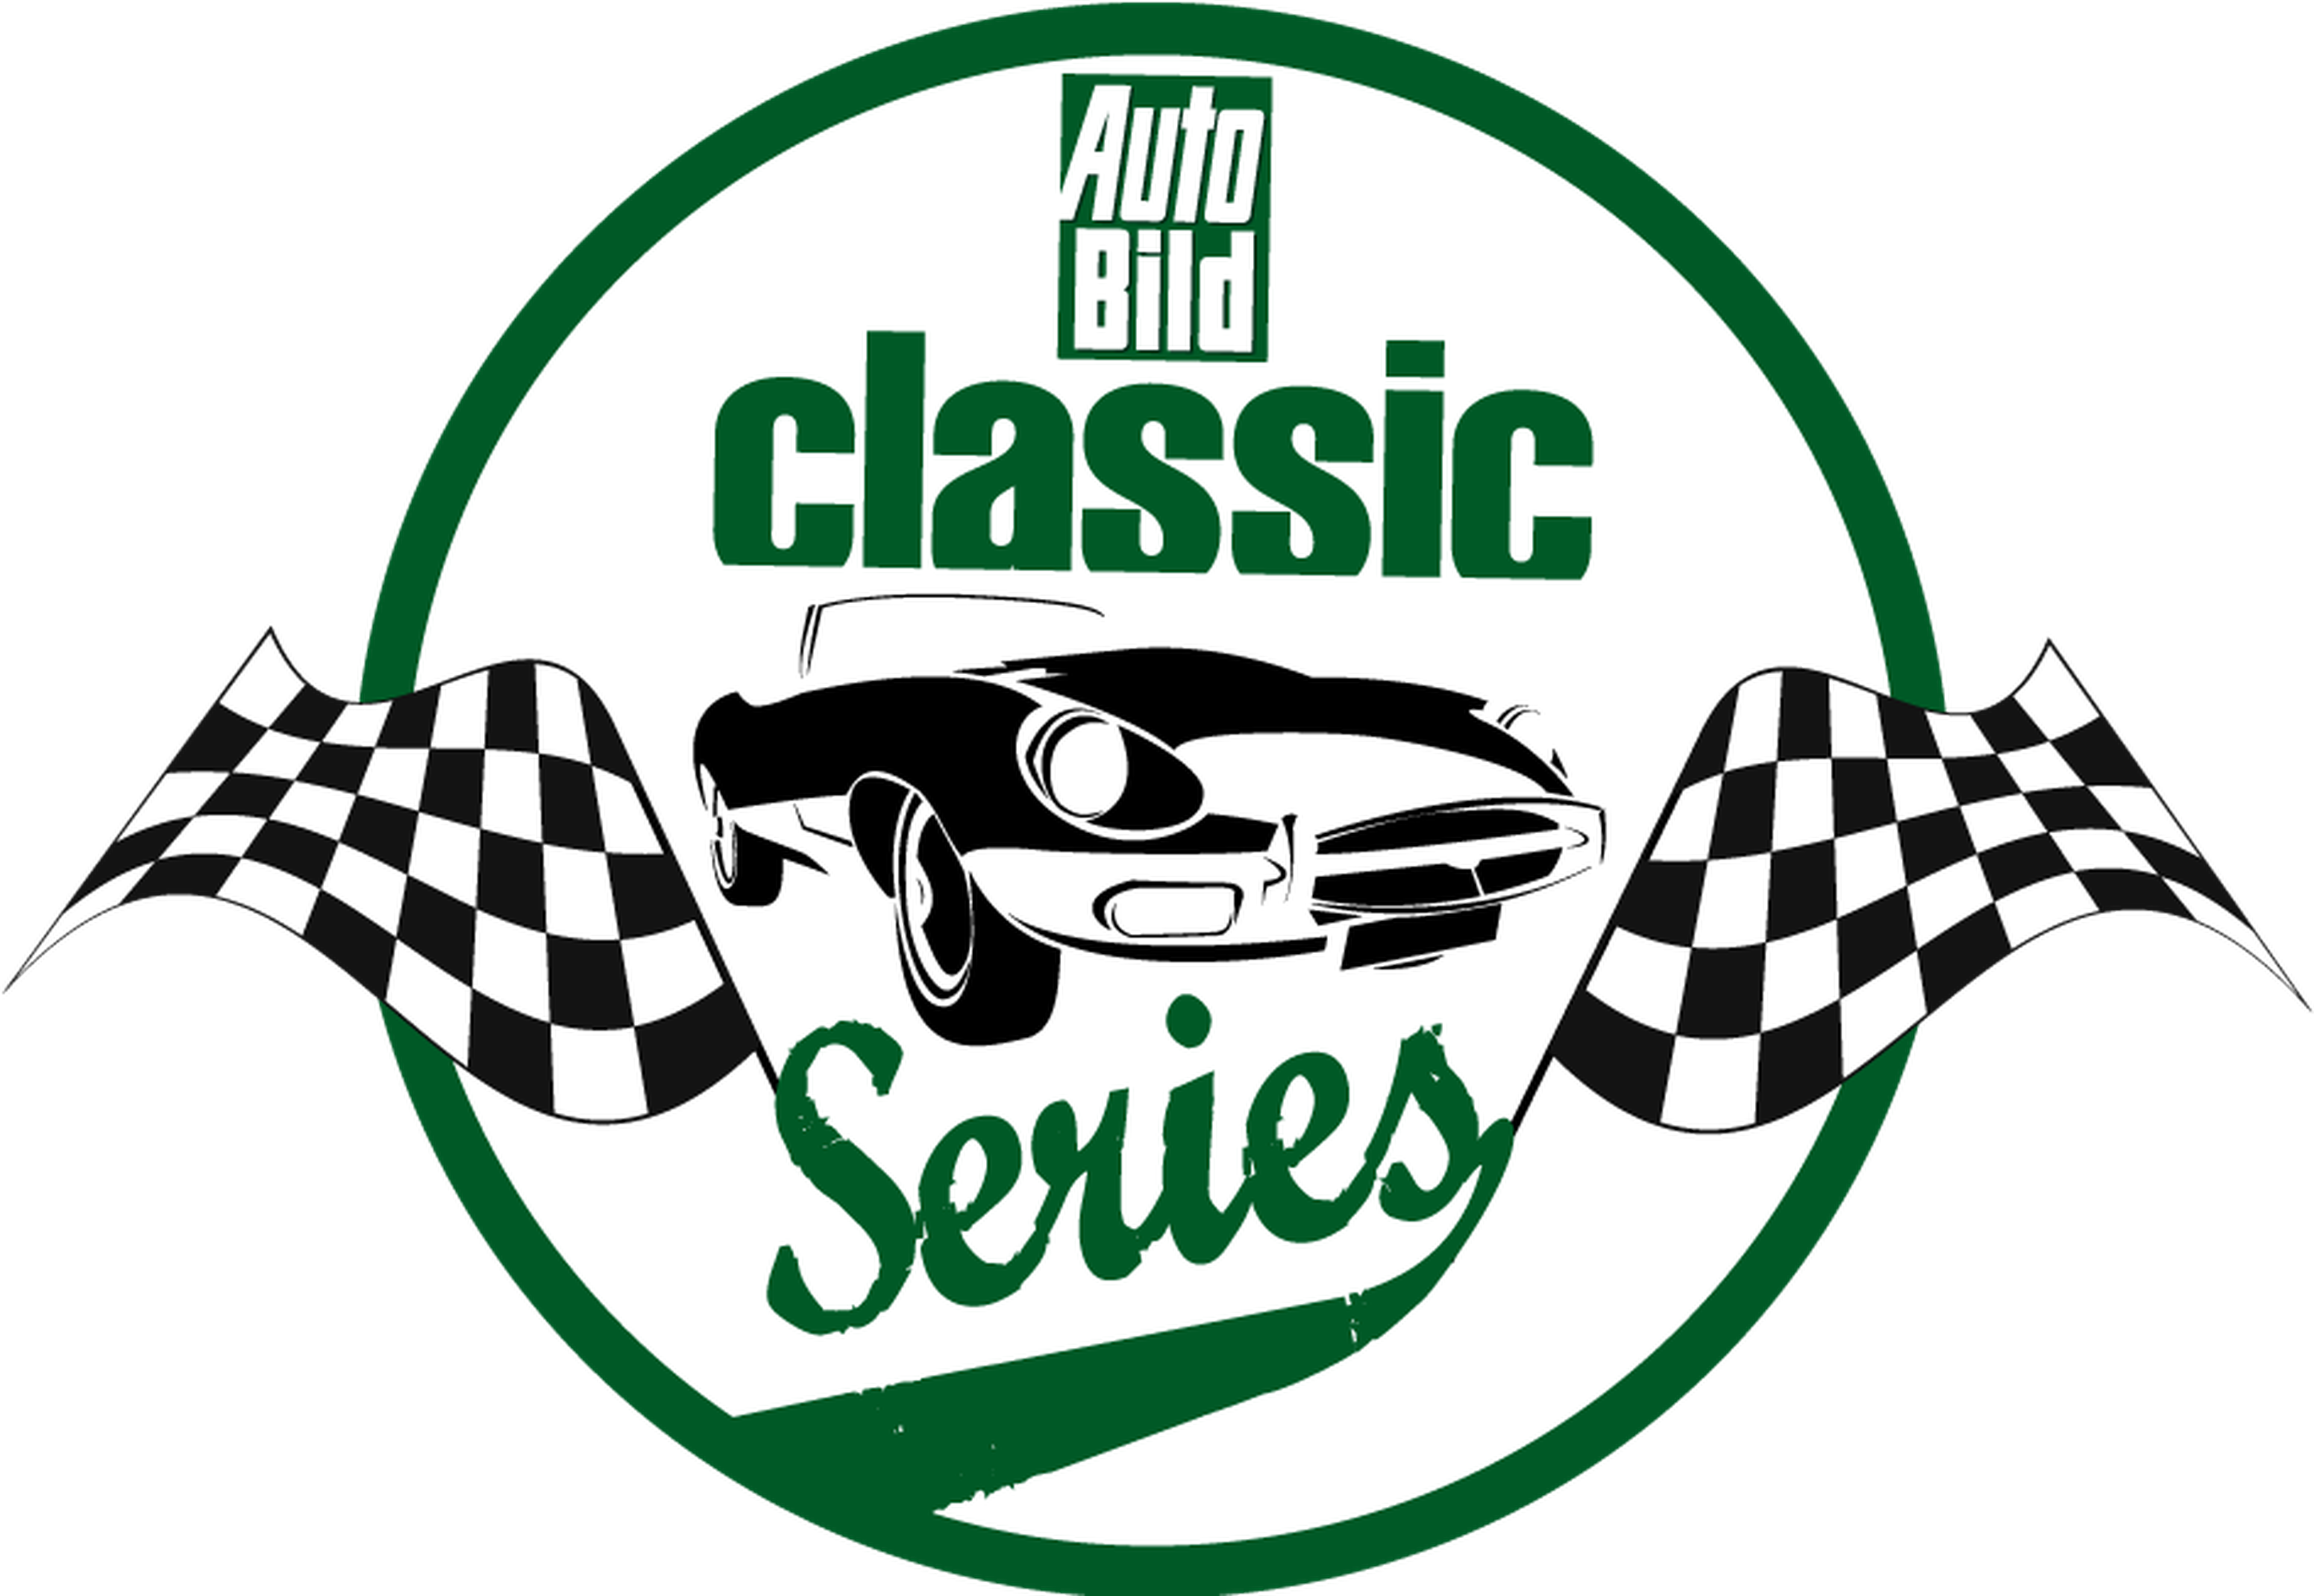 Auto Bild Classic Series: horario definitivo